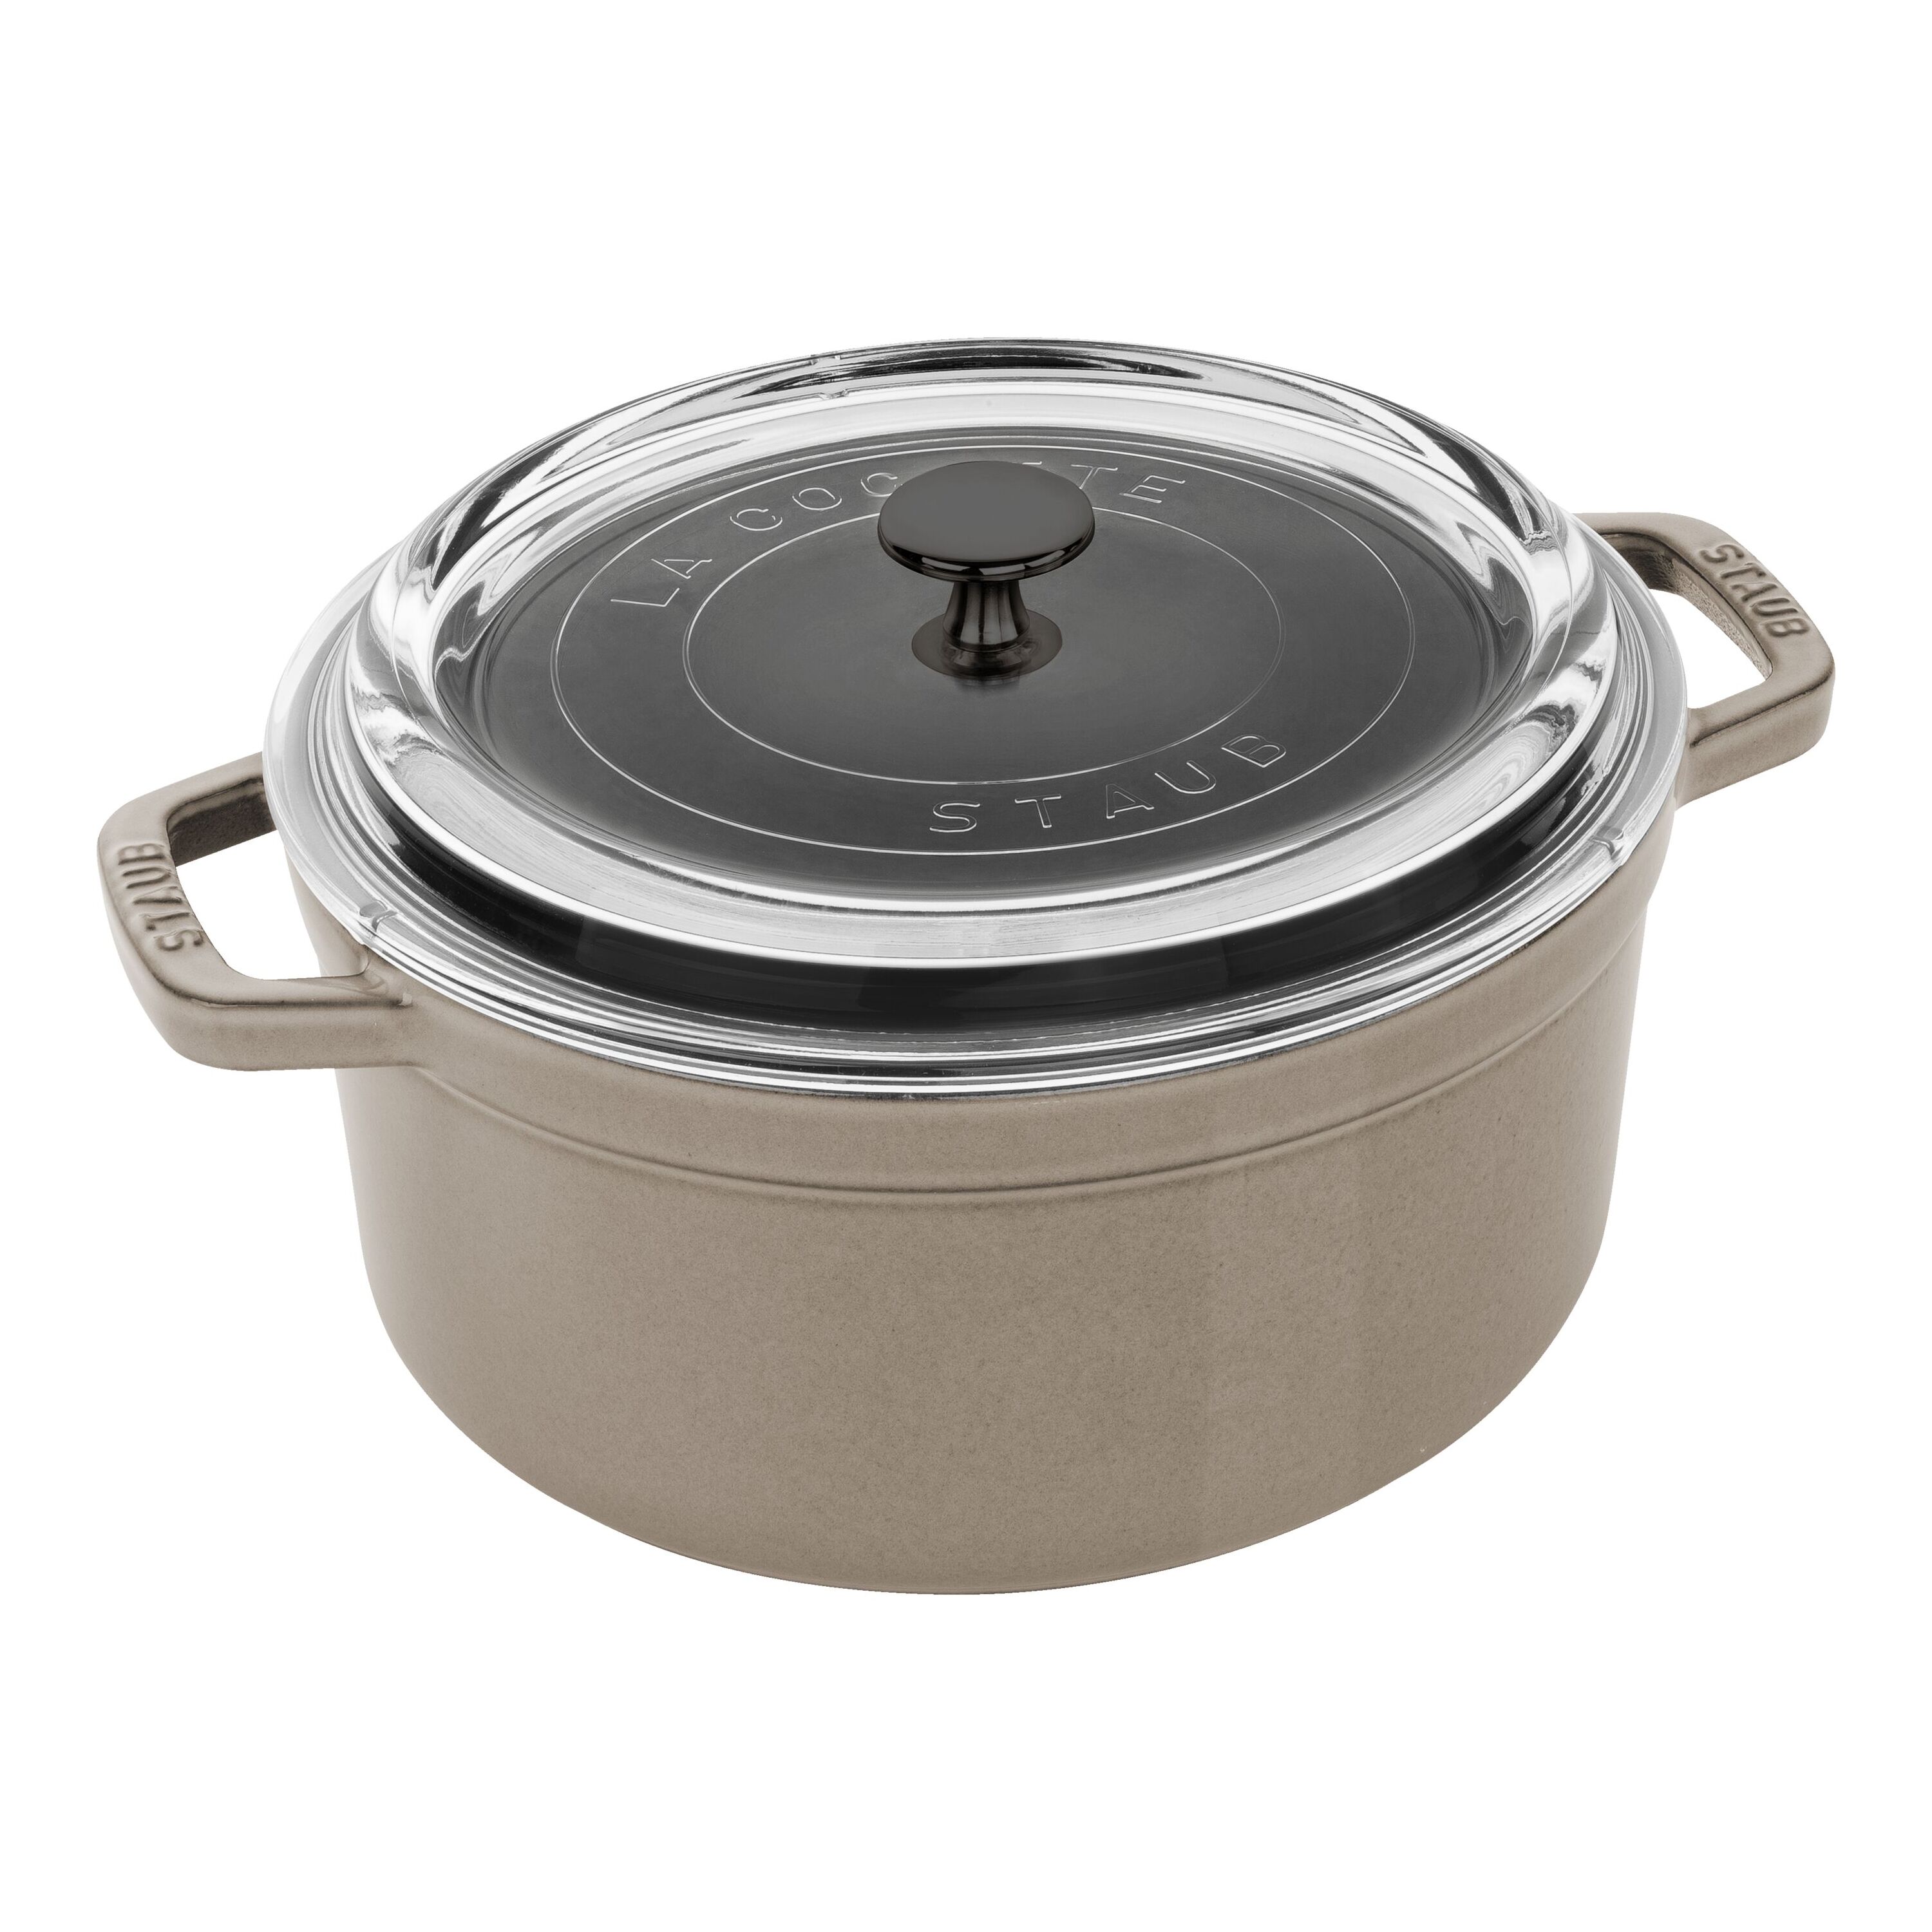 Saflon Stainless Steel 4 Qt Saute Pot with Glass Lid